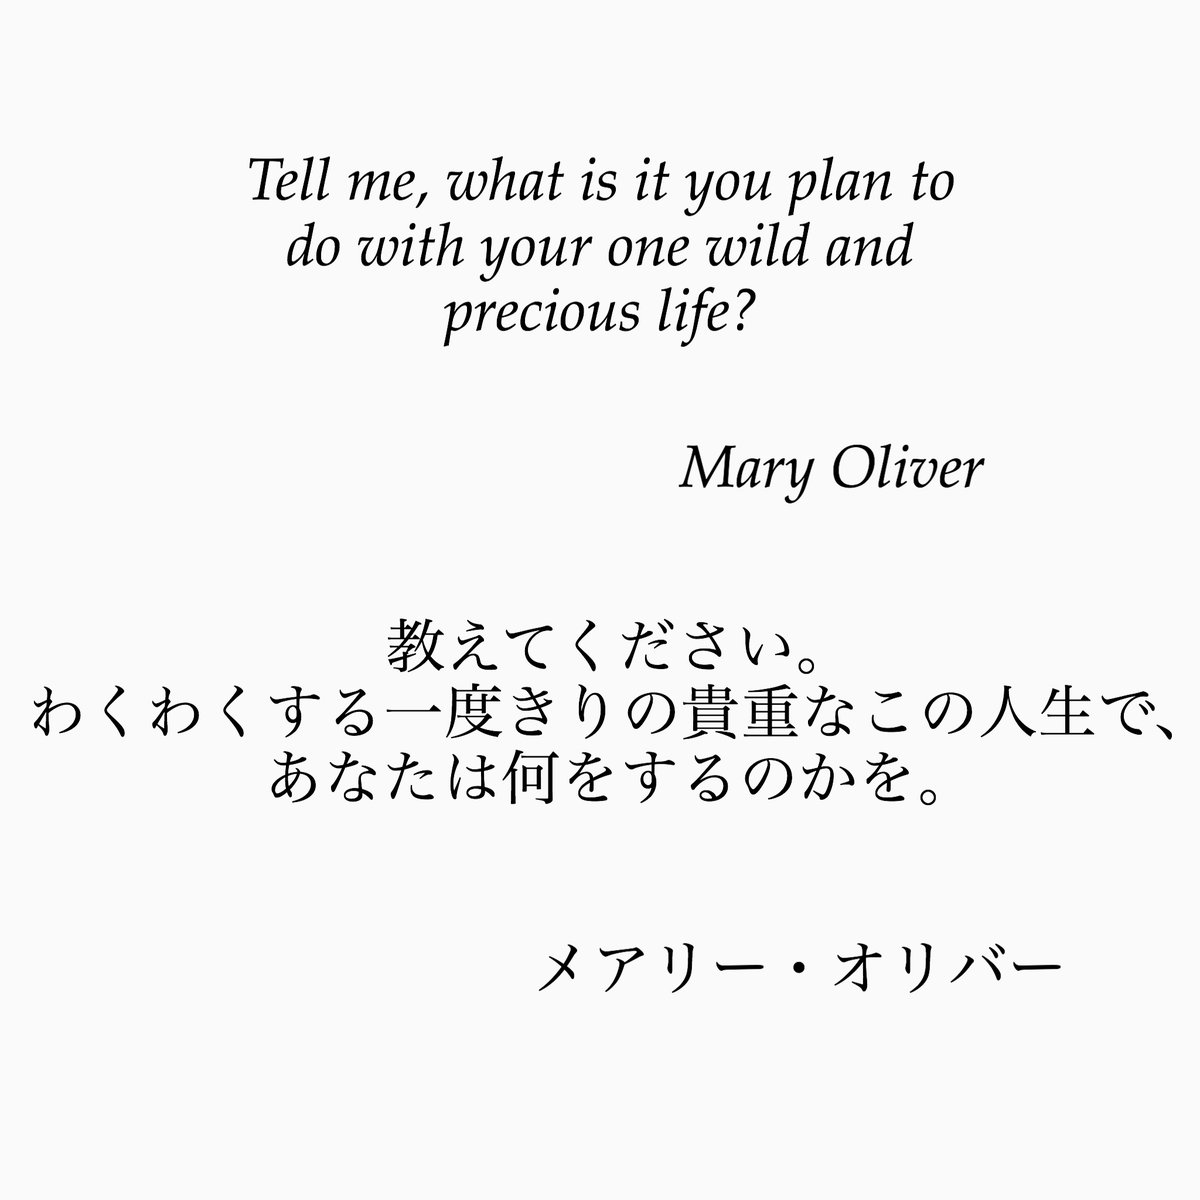 ゆったり名言書写 No 45 本日の名言は 米国の詩人メアリー オリバーの言葉です この言葉は ハーバード大学の卒業式でも引用されました ゆったり名言書写